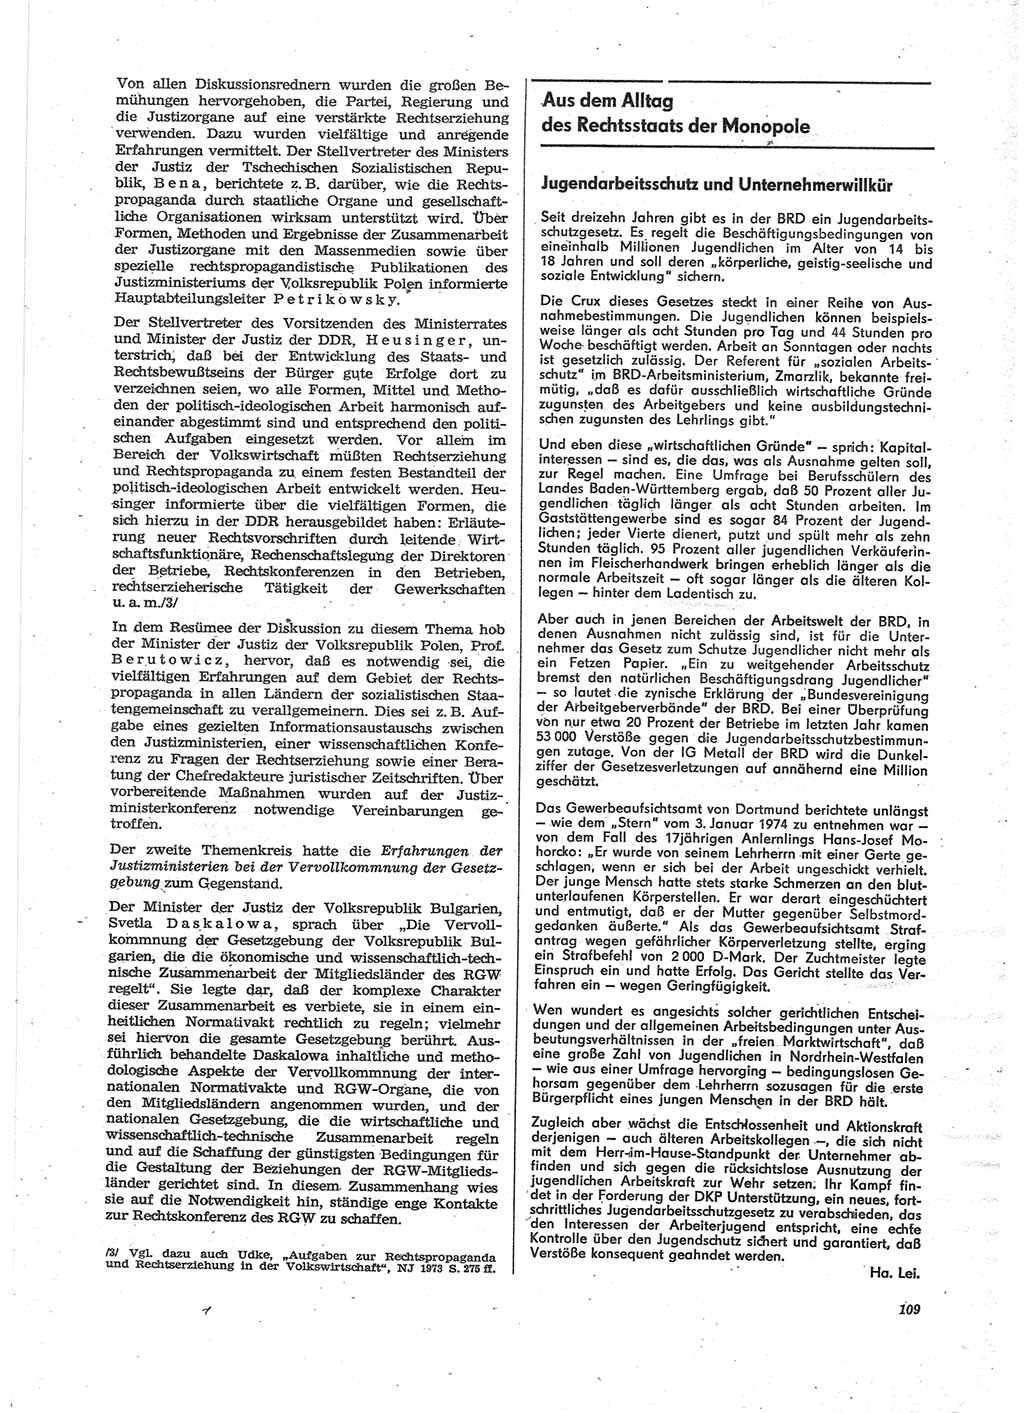 Neue Justiz (NJ), Zeitschrift für Recht und Rechtswissenschaft [Deutsche Demokratische Republik (DDR)], 28. Jahrgang 1974, Seite 109 (NJ DDR 1974, S. 109)